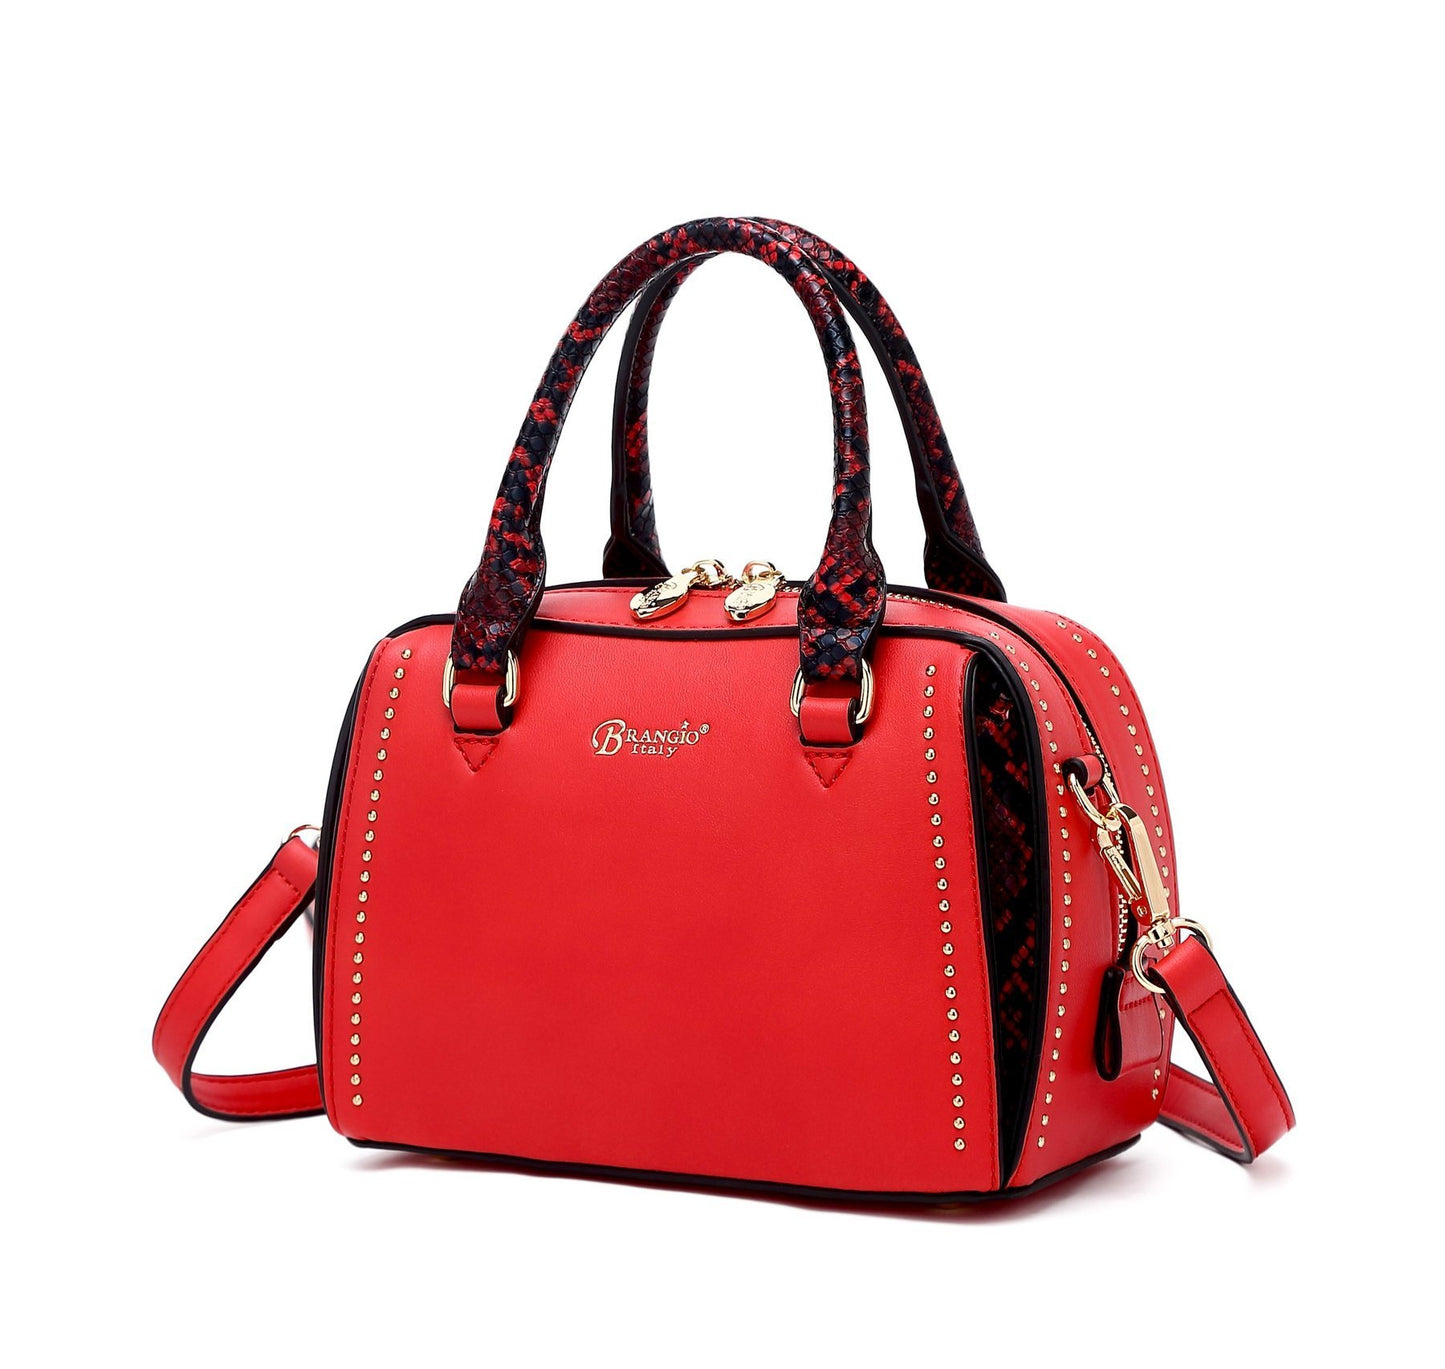 Serpa Small Satchel Handbag Red